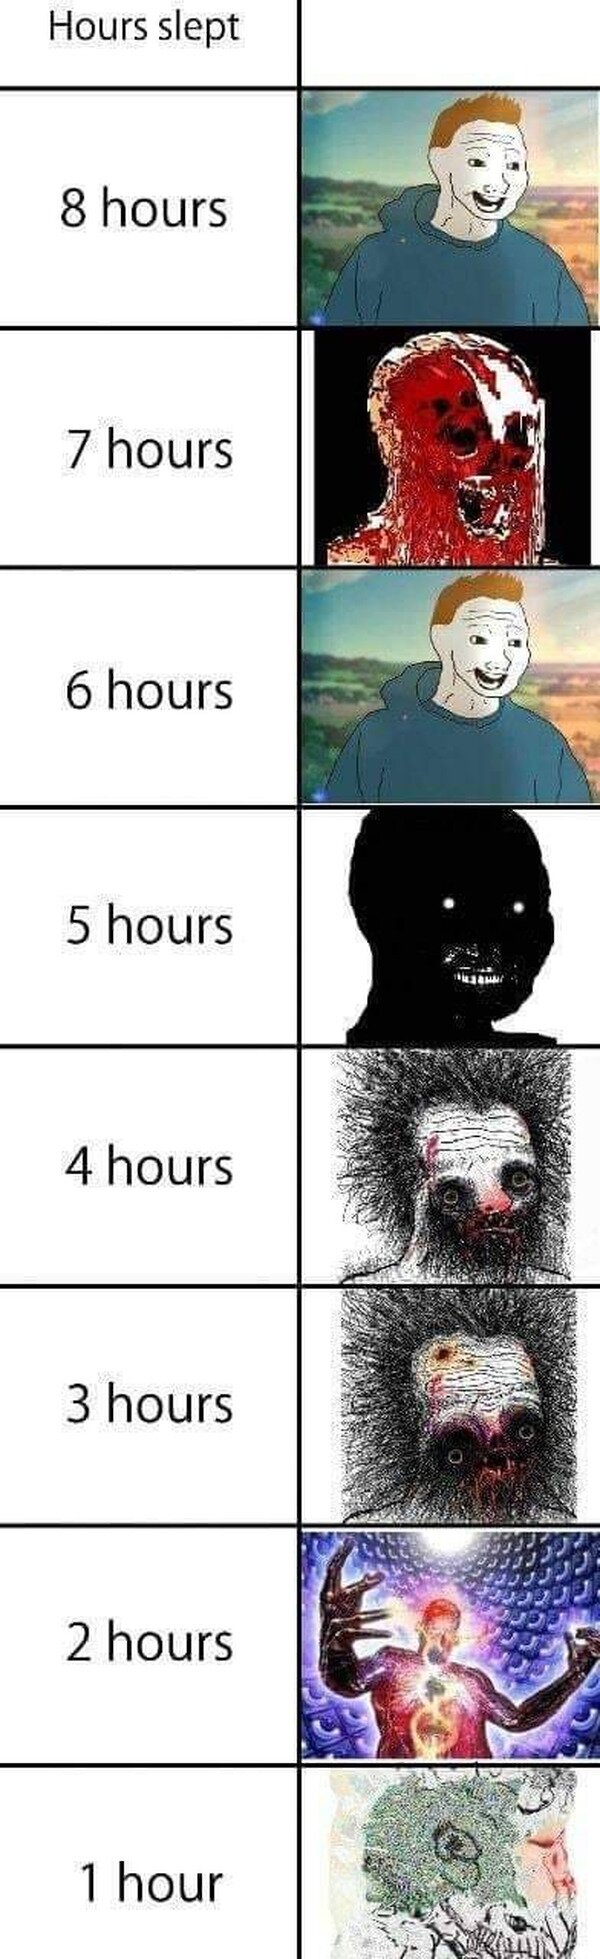 Meme_otros - Cómo te levantas según las horas que duermes